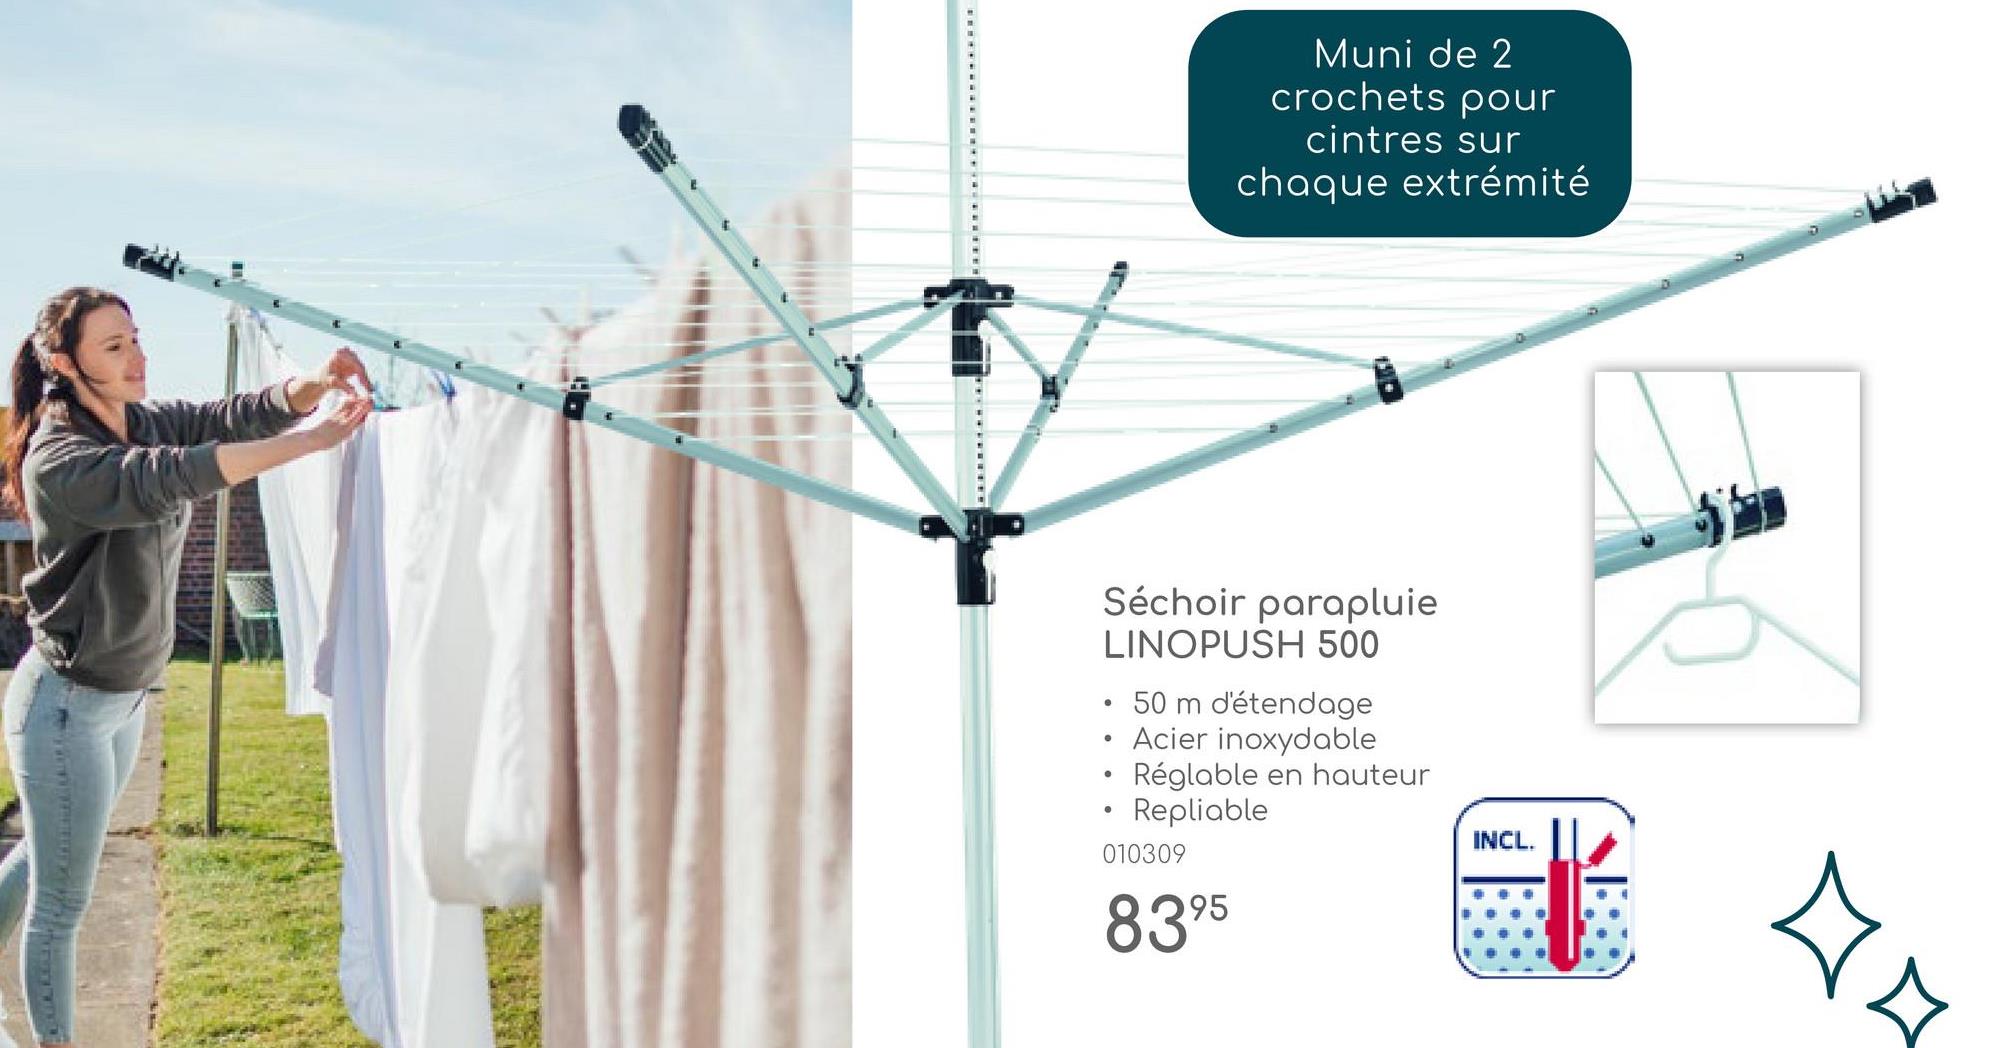 Muni de 2
crochets pour
cintres sur
chaque extrémité
Séchoir parapluie
LINOPUSH 500
50 m d'étendage
•
•
•Acier inoxydable
Réglable en hauteur
Repliable
010309
INCL.
8395
4